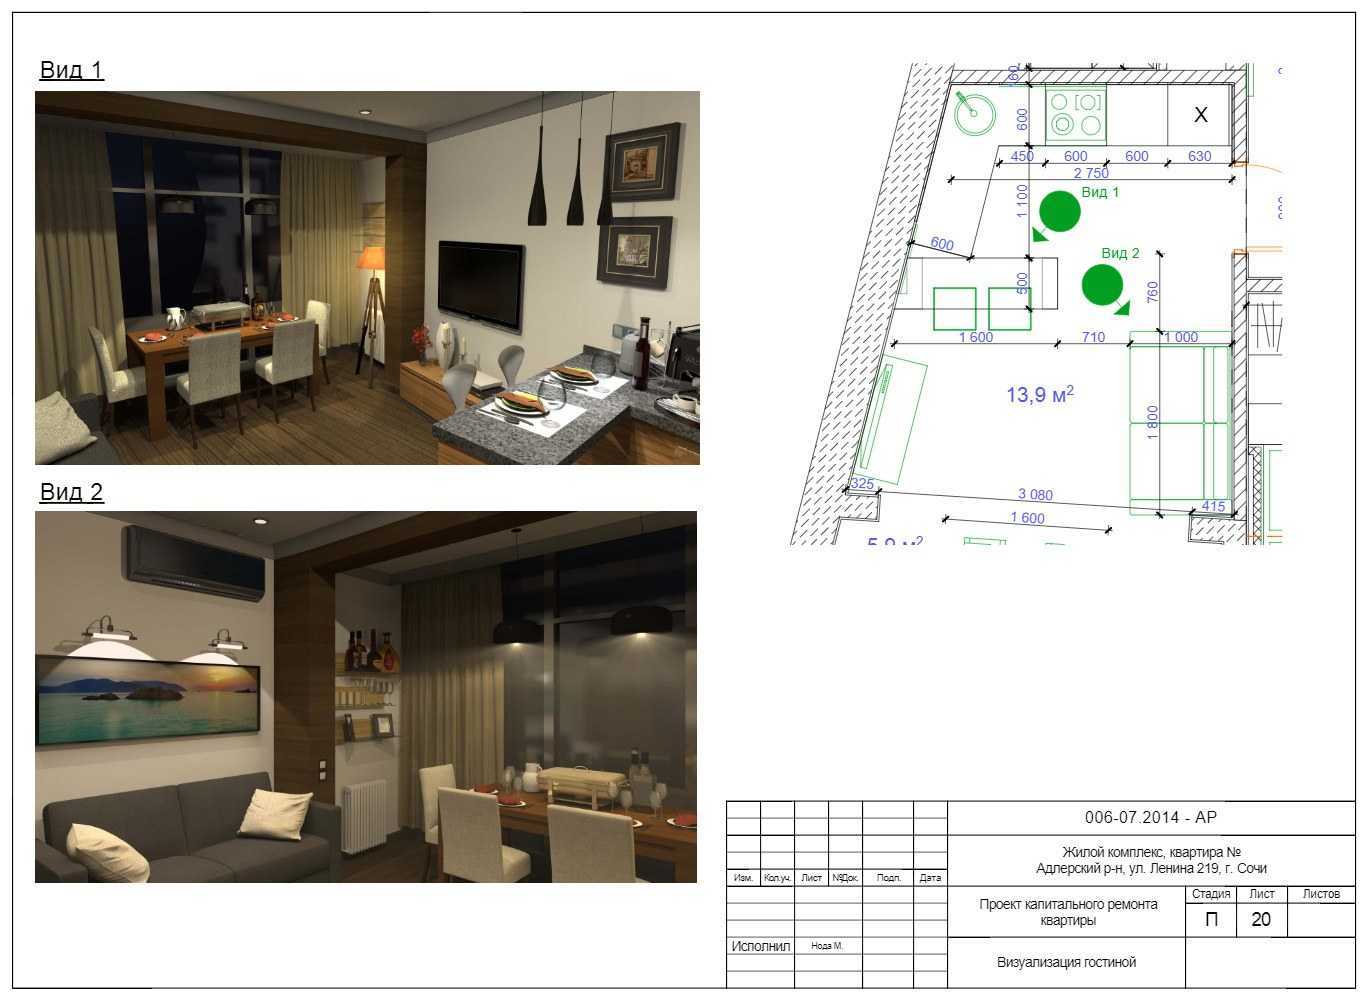 Оформление дизайн проекта квартиры